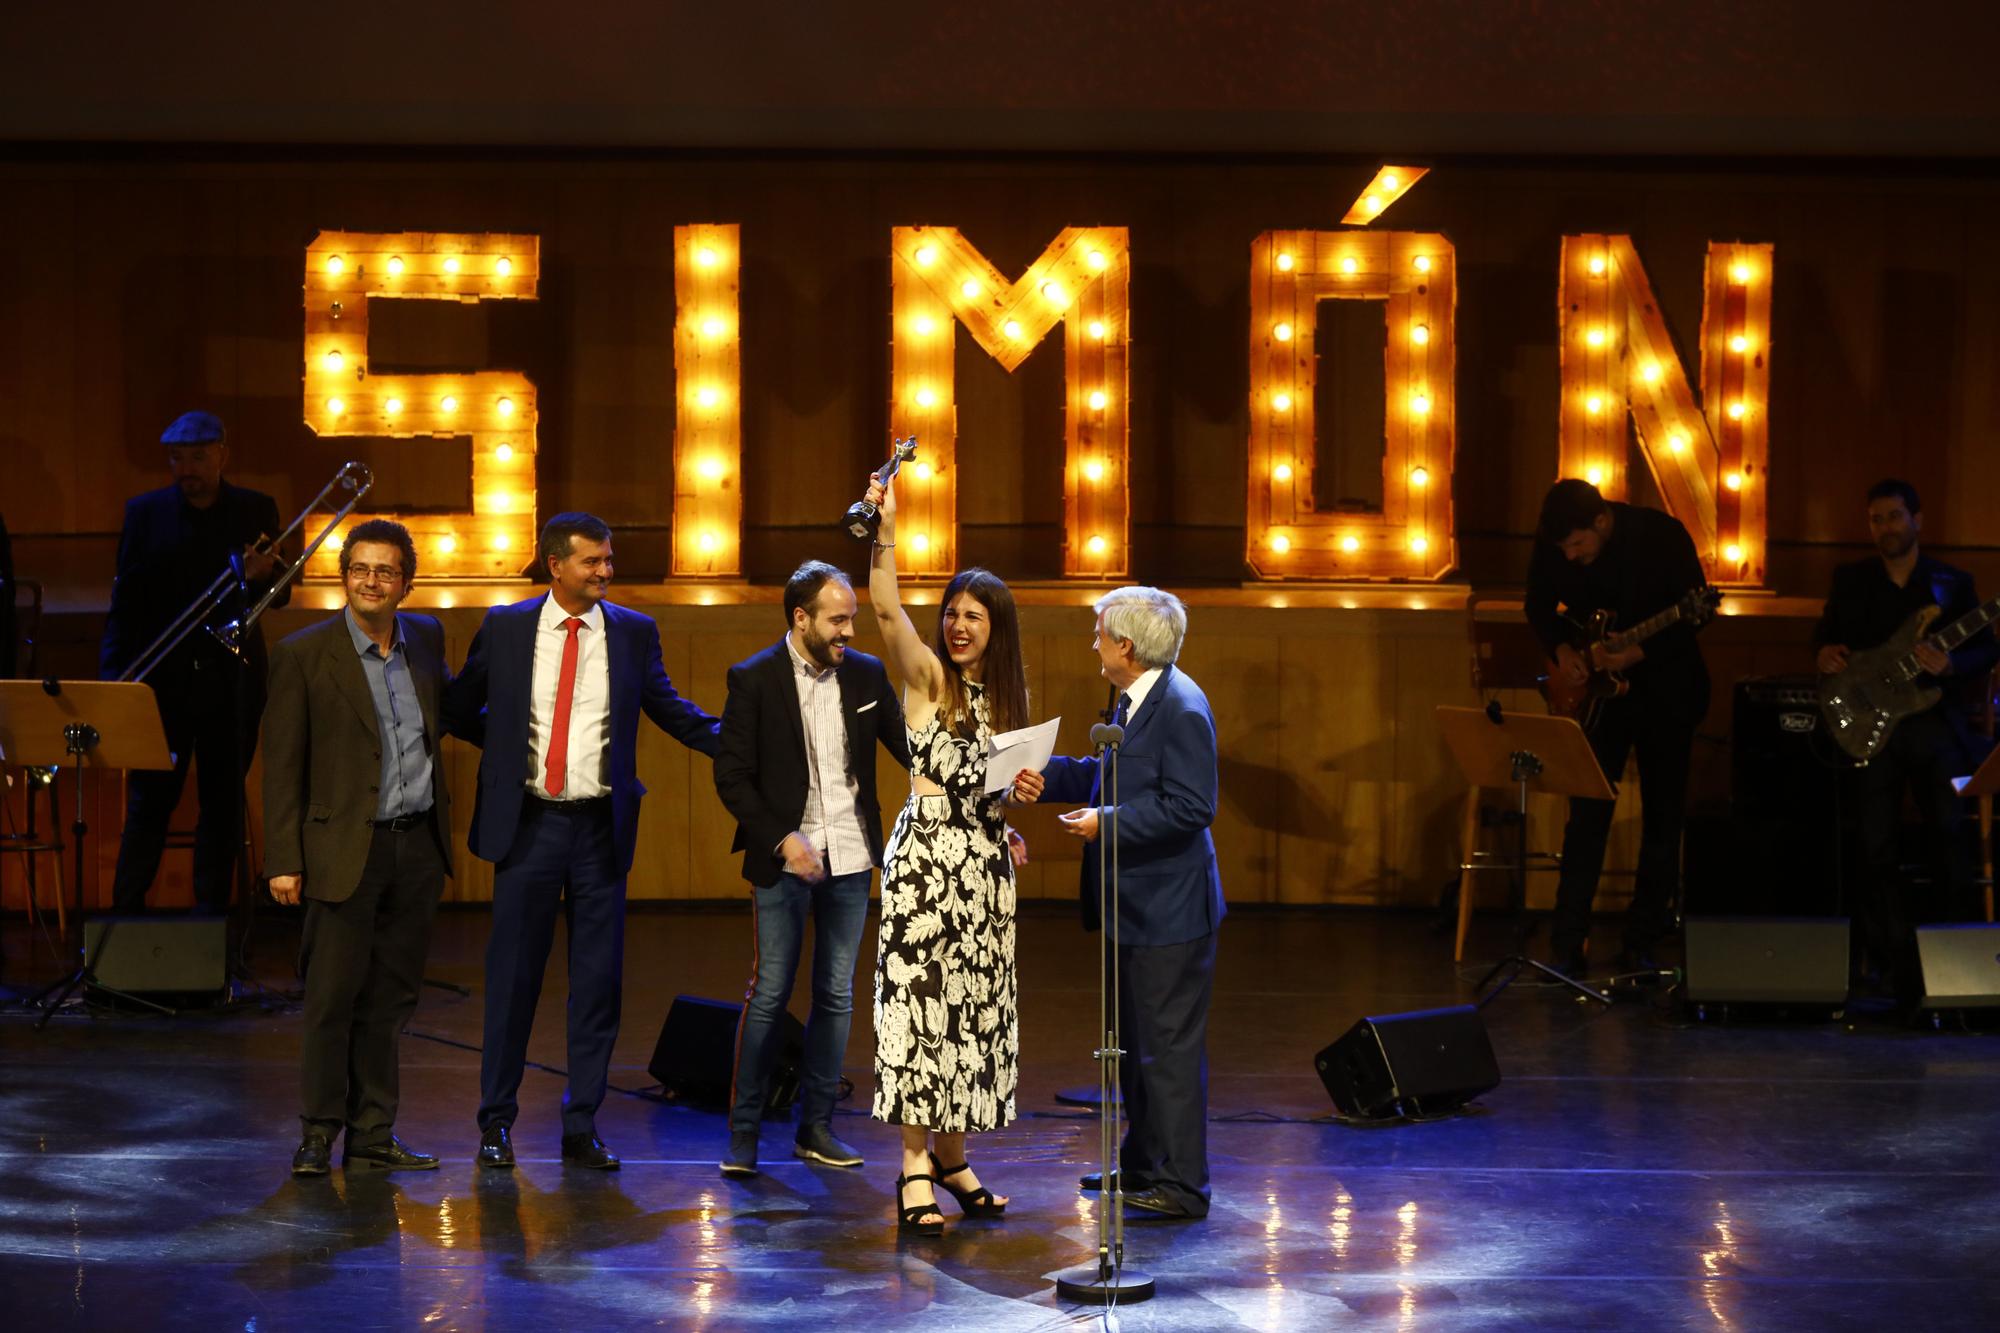 Gala de los Premios Simón